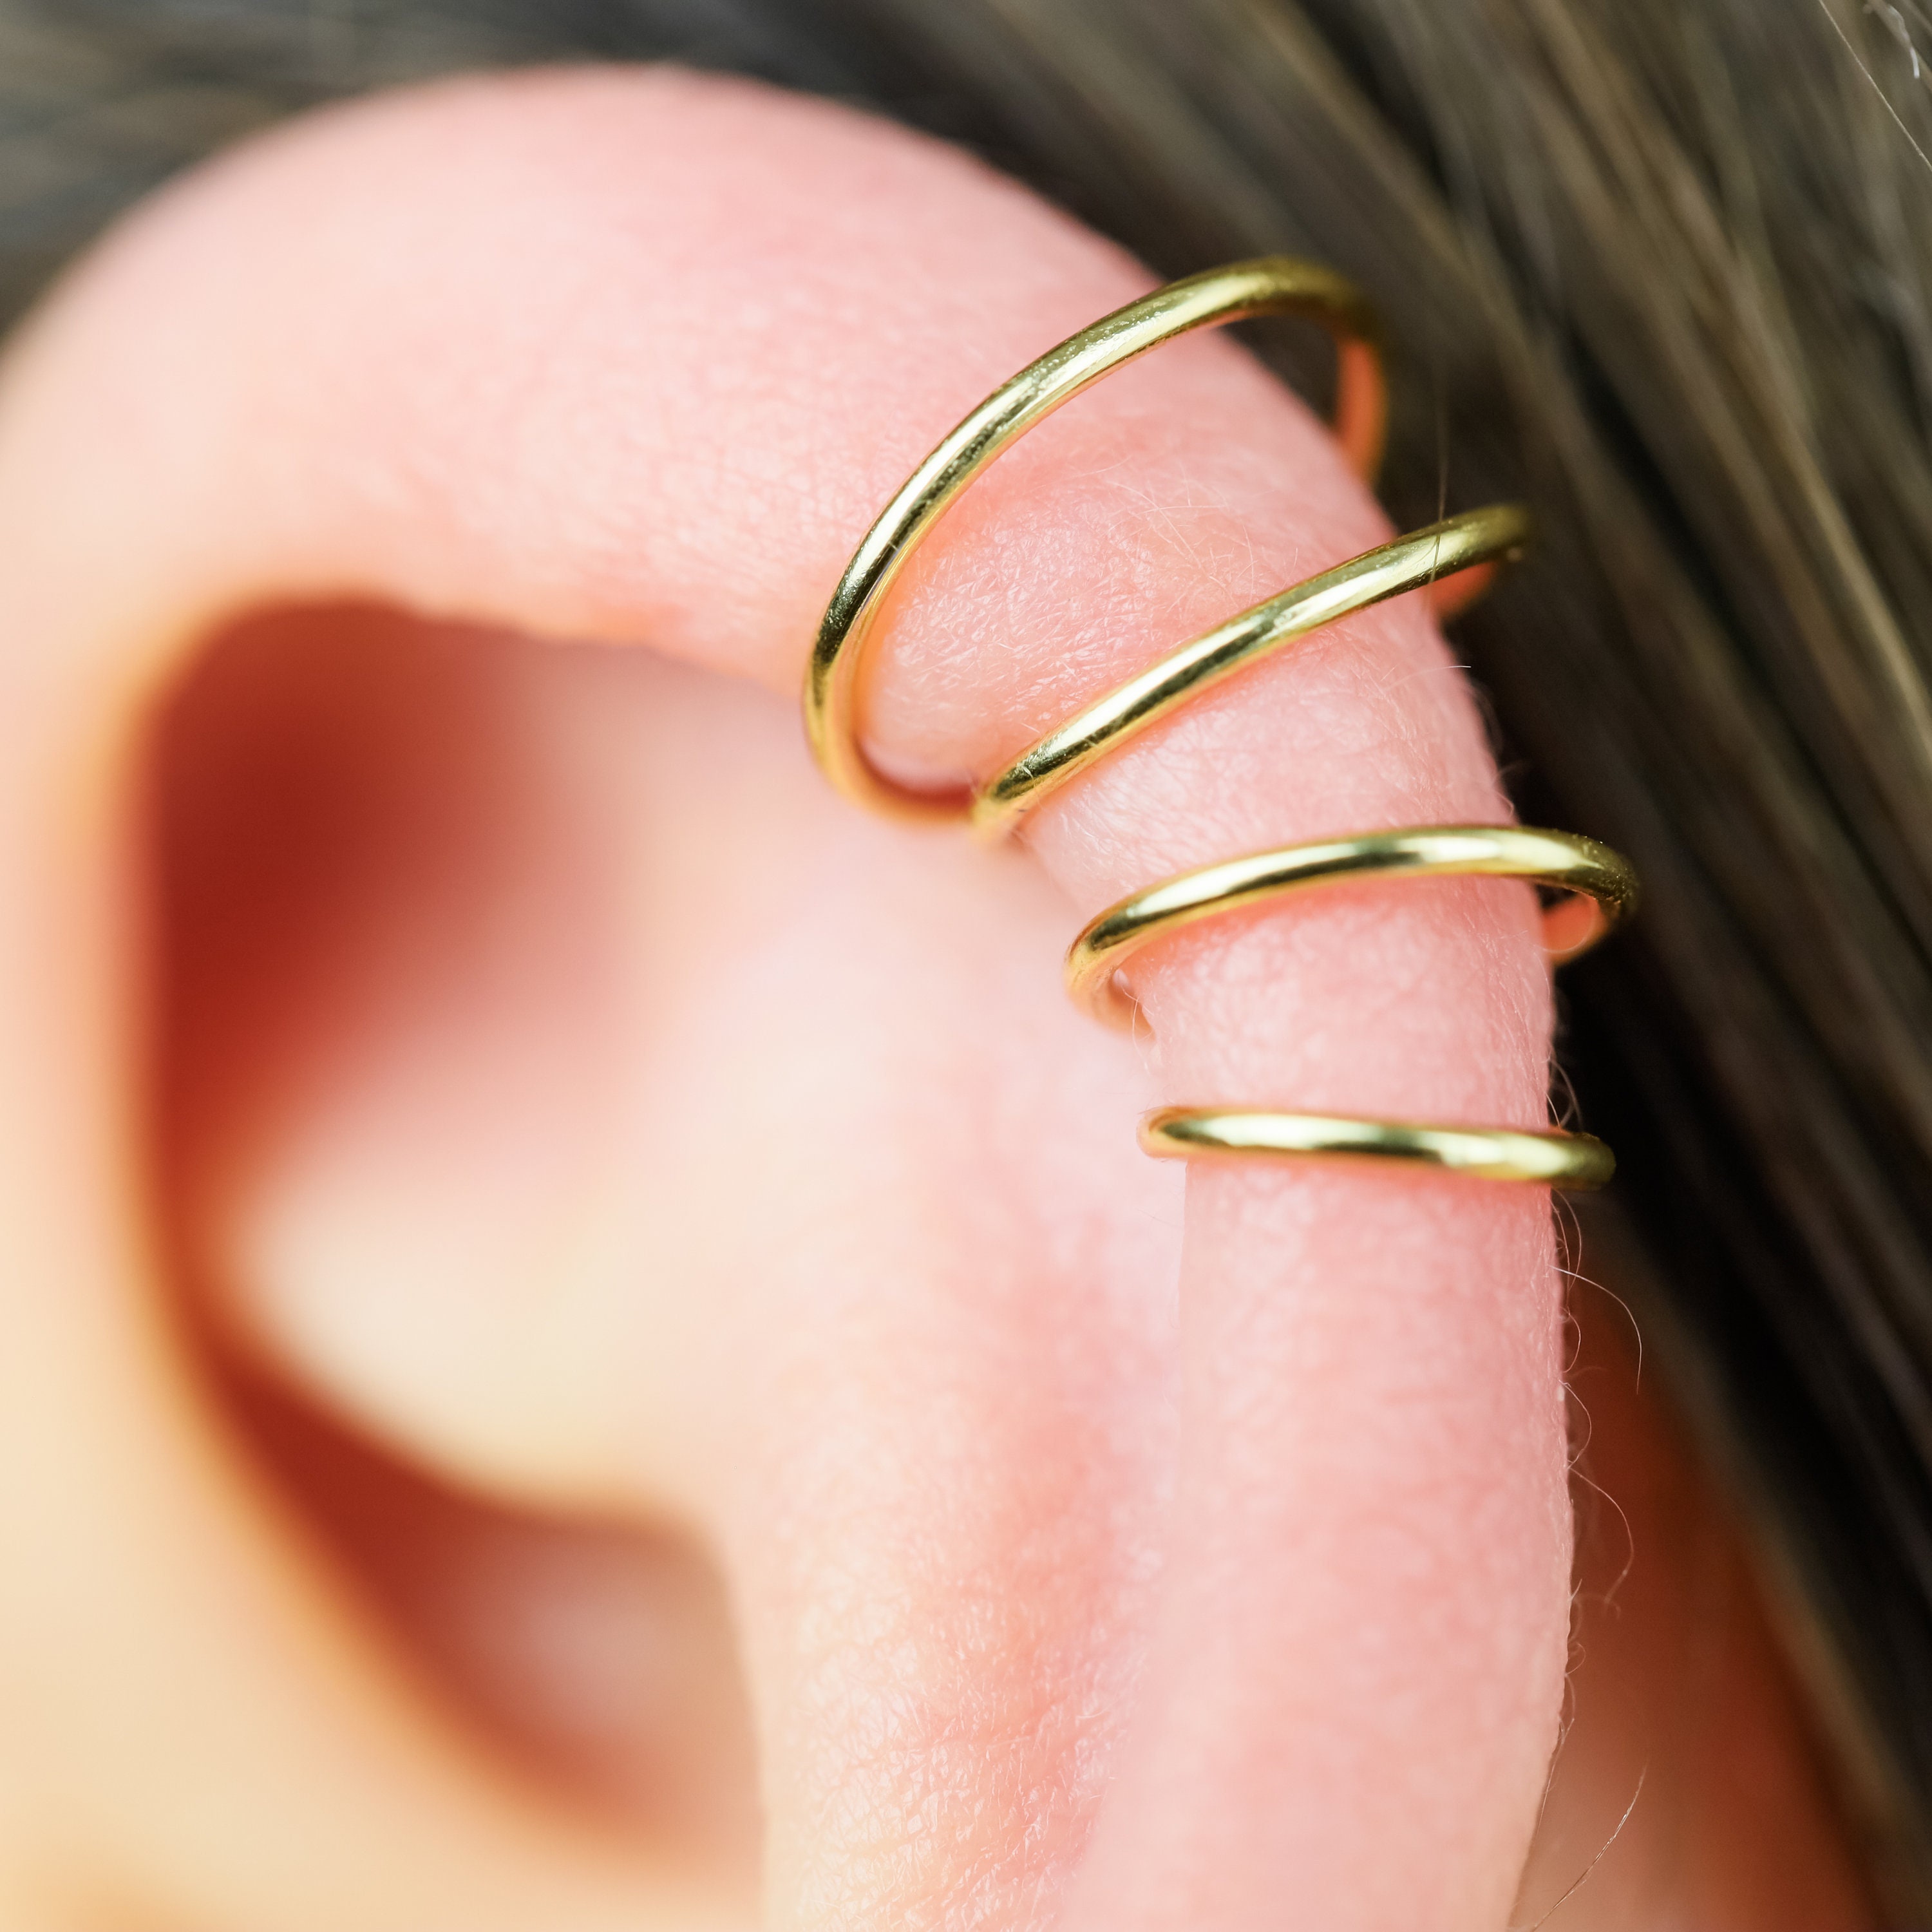 Mini Hoop Earrings Cartilage Hoops CZ Charm Hoops Micro Pave Charms Gold Huggie Hoops Simple Tiny Hoop Earrings Dainty Hoop Earrings